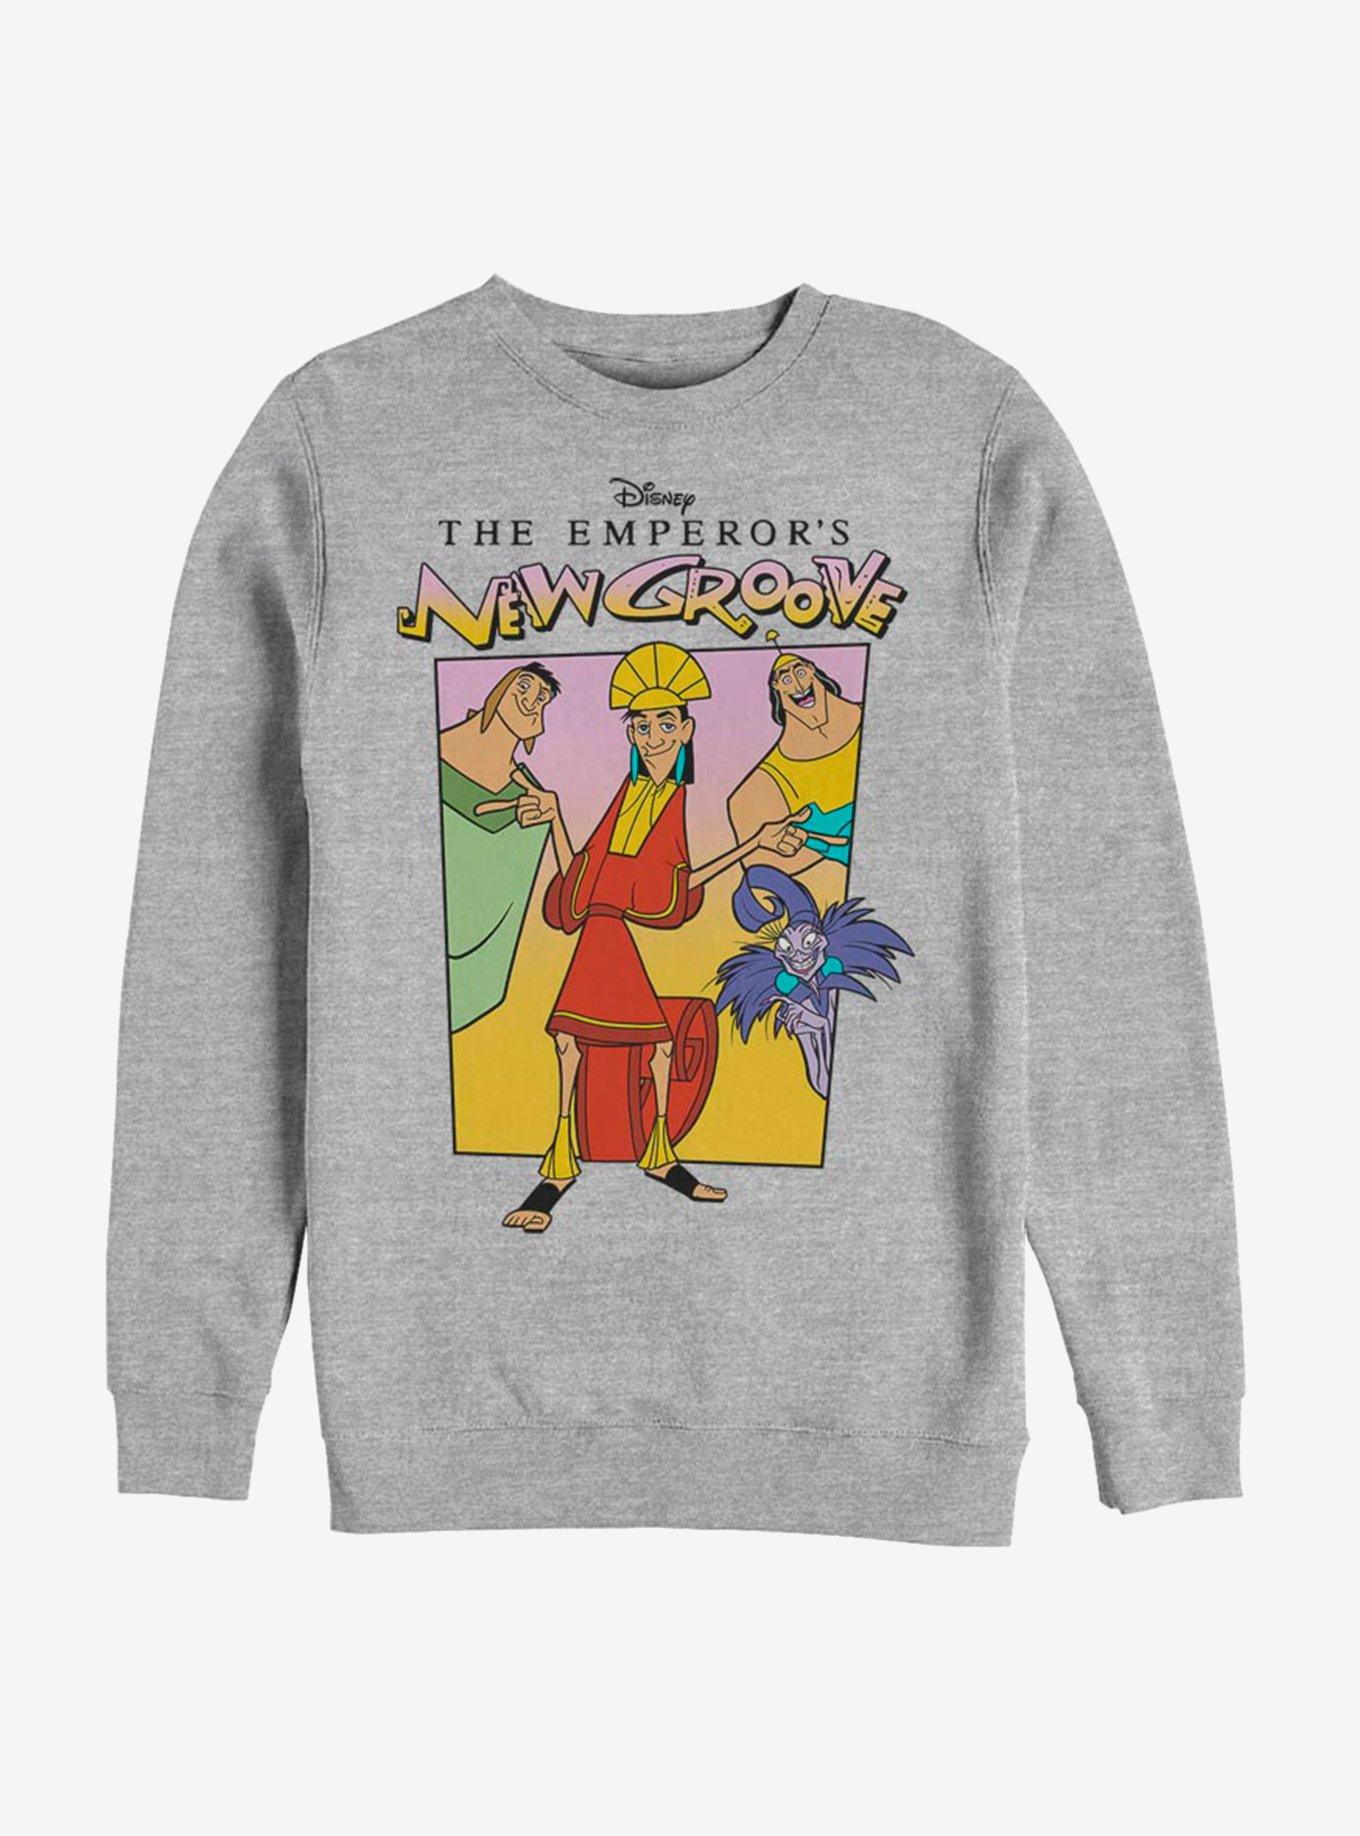 Disney The Emperor's New Groove Cast Sweatshirt